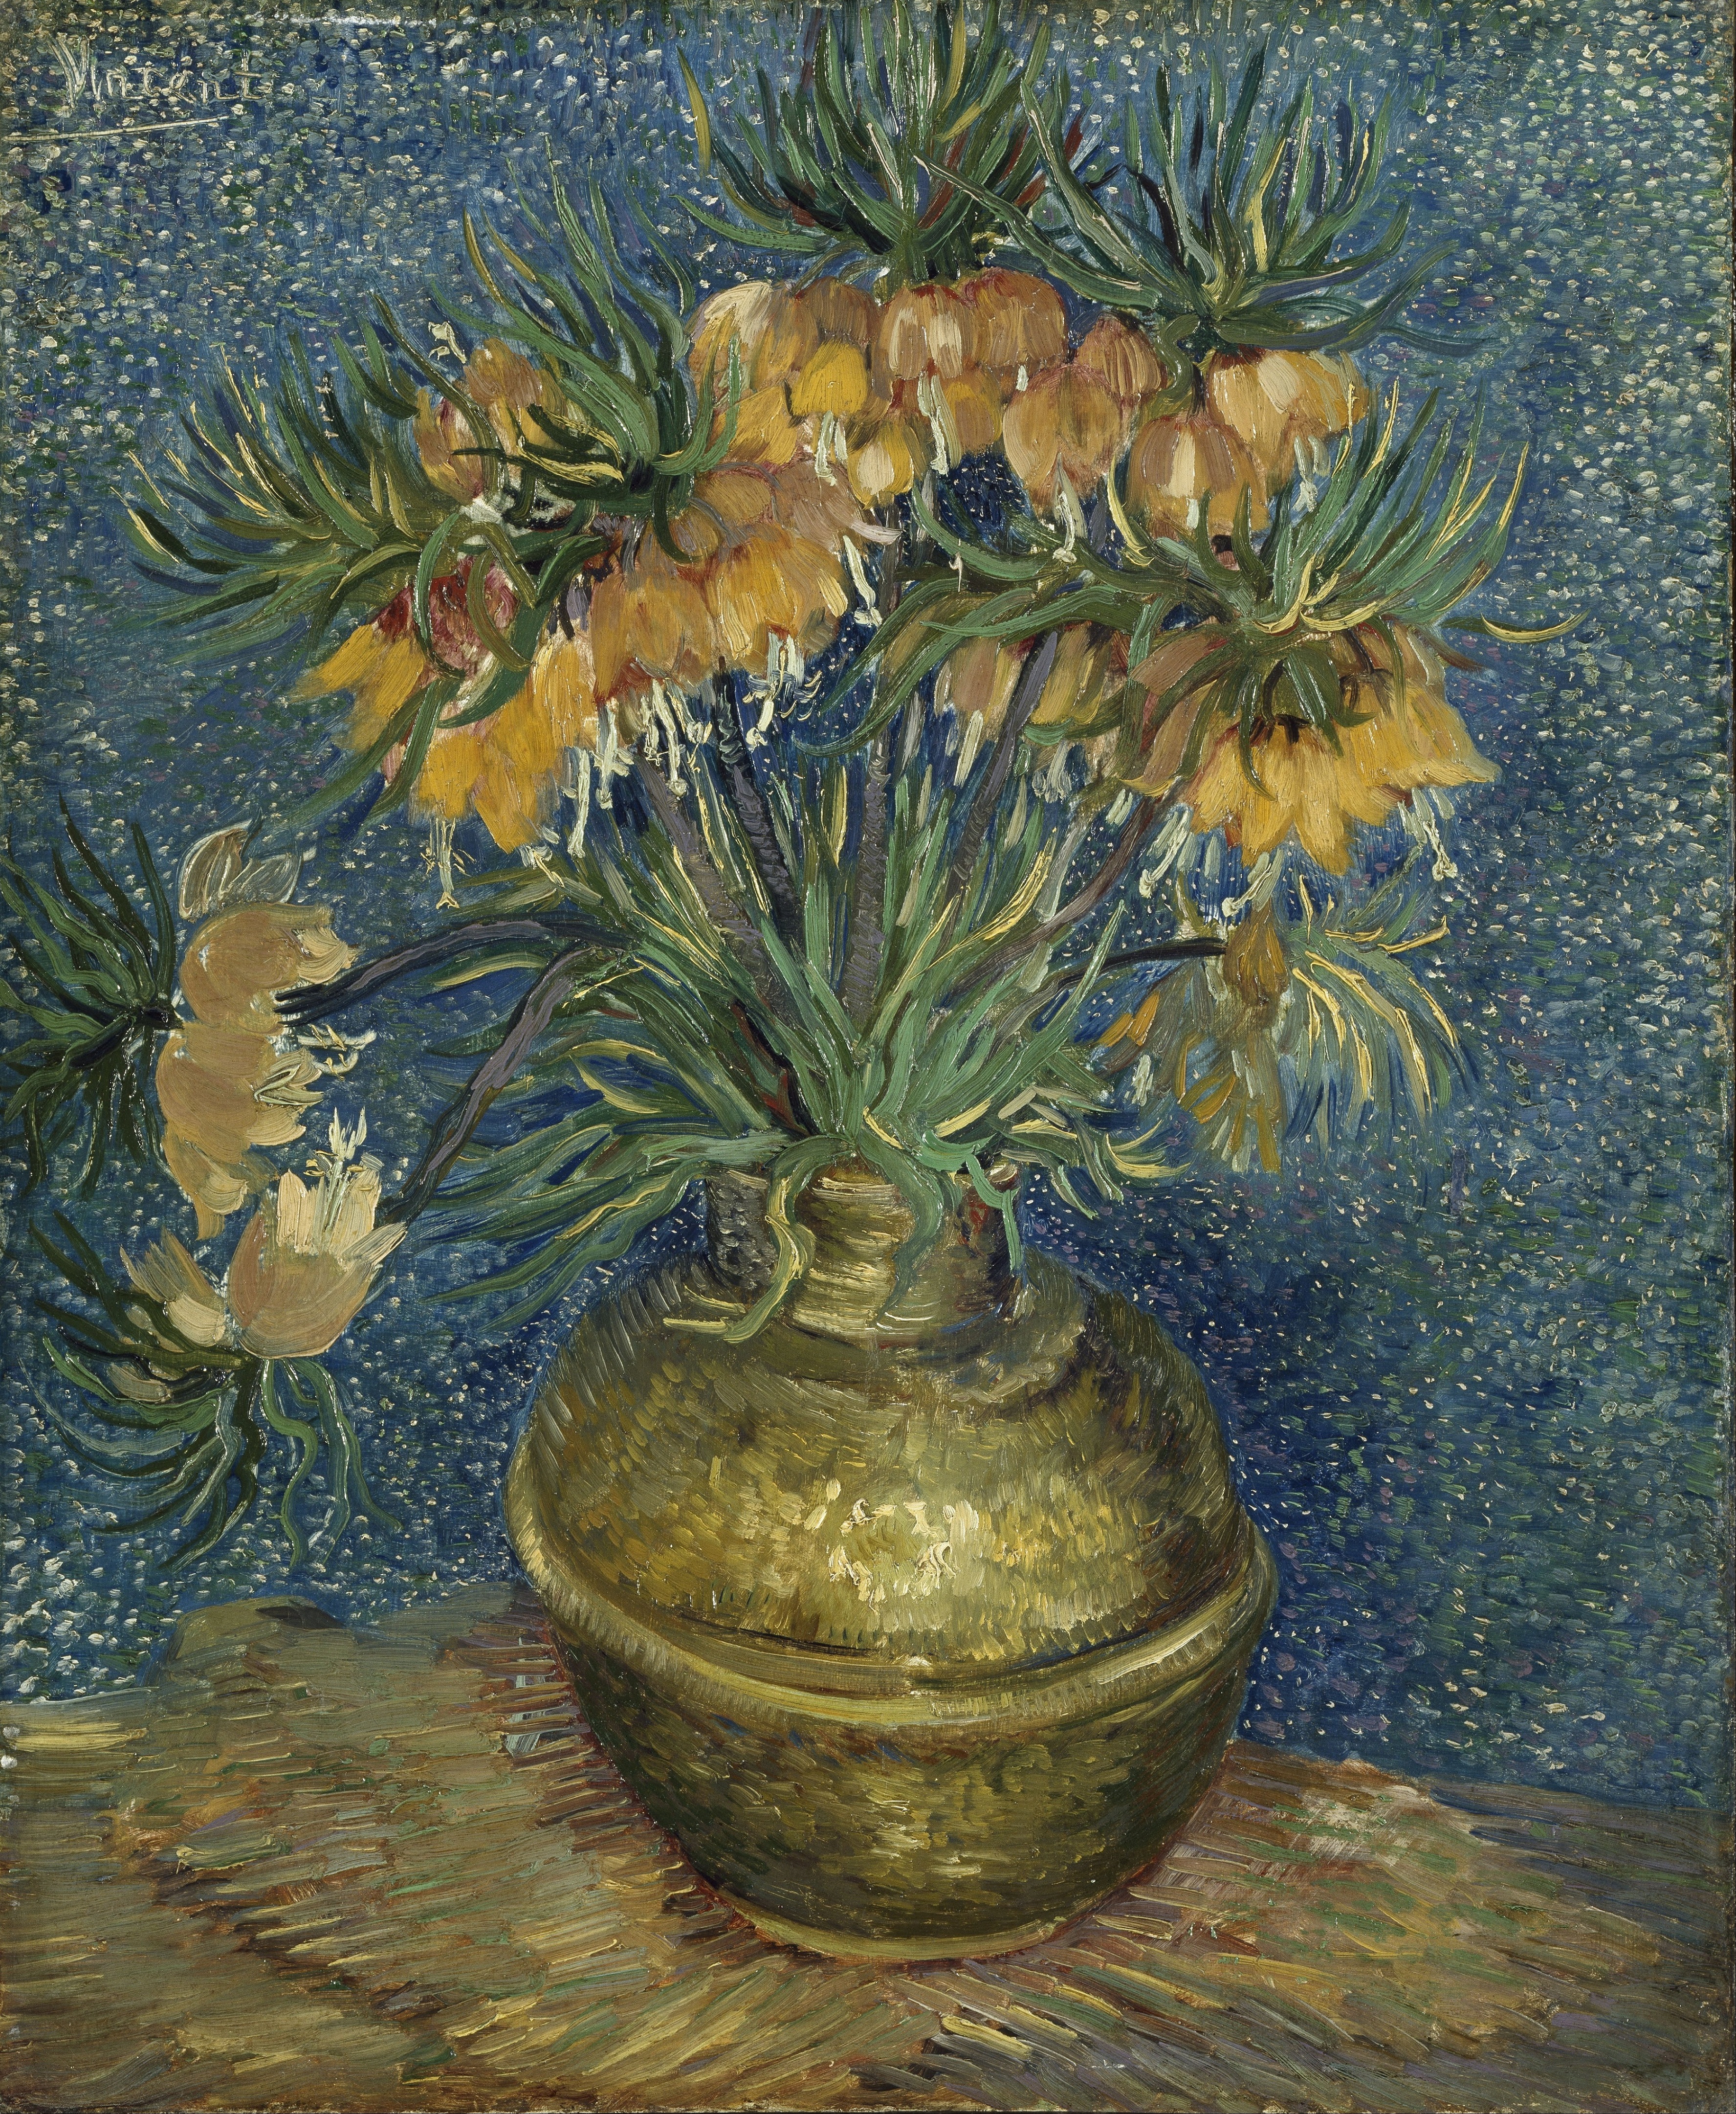 Arte: Exposição pós-impressionista com obras de Van Gogh